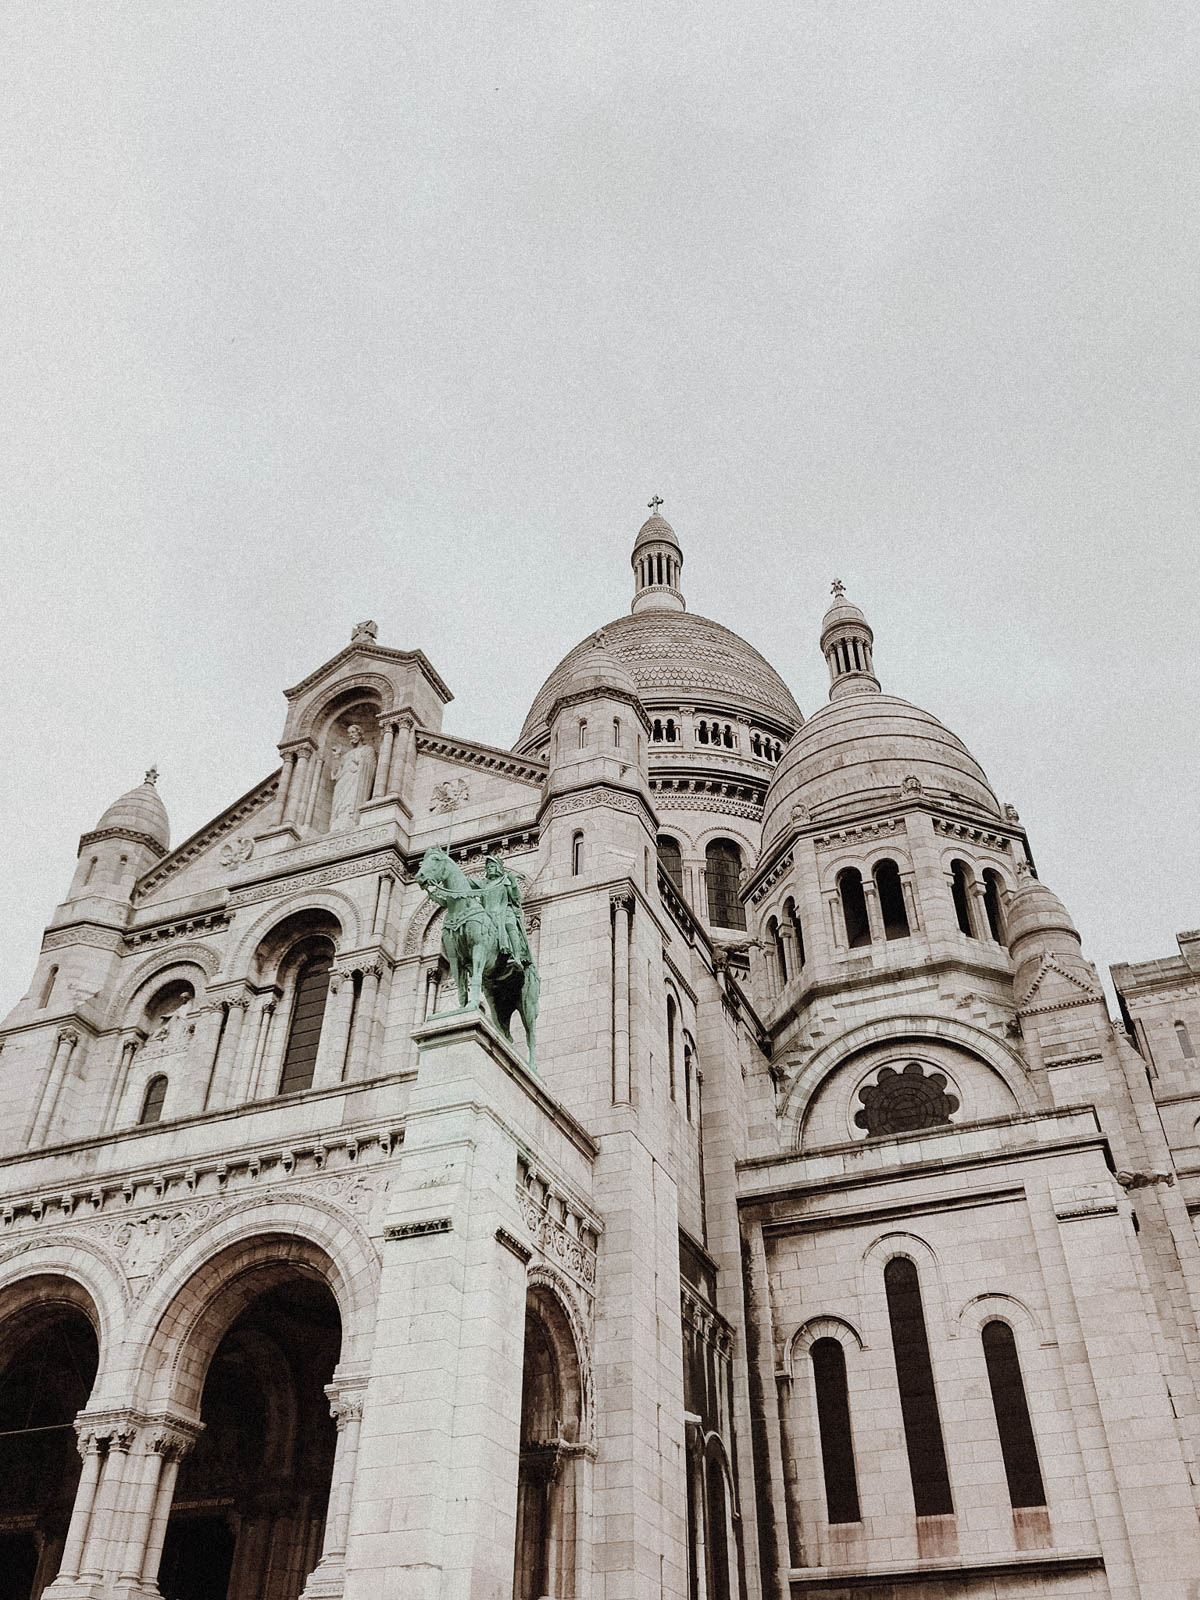 Paris France Travel Guide - Basilique Sacré-Coeur, European Architecture and Buildings / RG Daily Blog